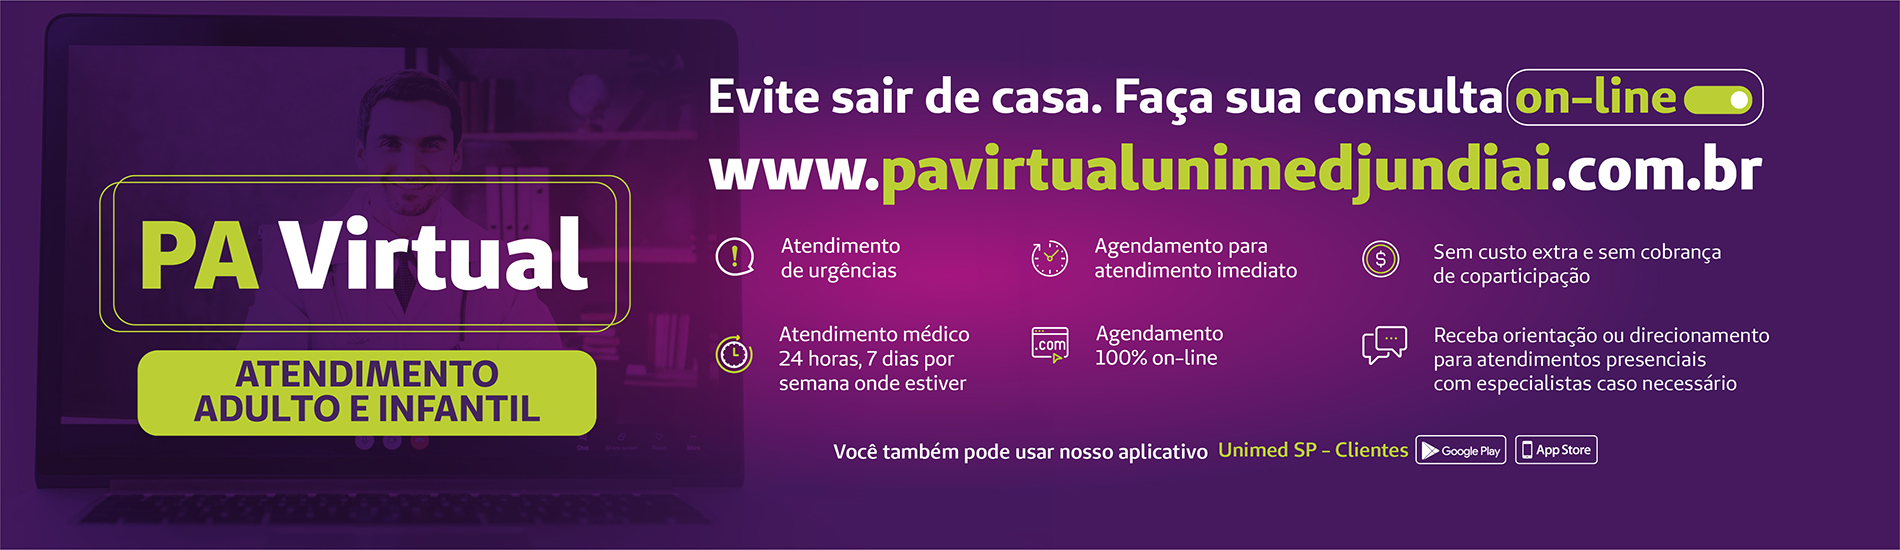 Banner clicável do topo da homepage que diz "Tire suas dúvidas antes de sair de casa, telemedicina unimed jundiaií central coronavírus"